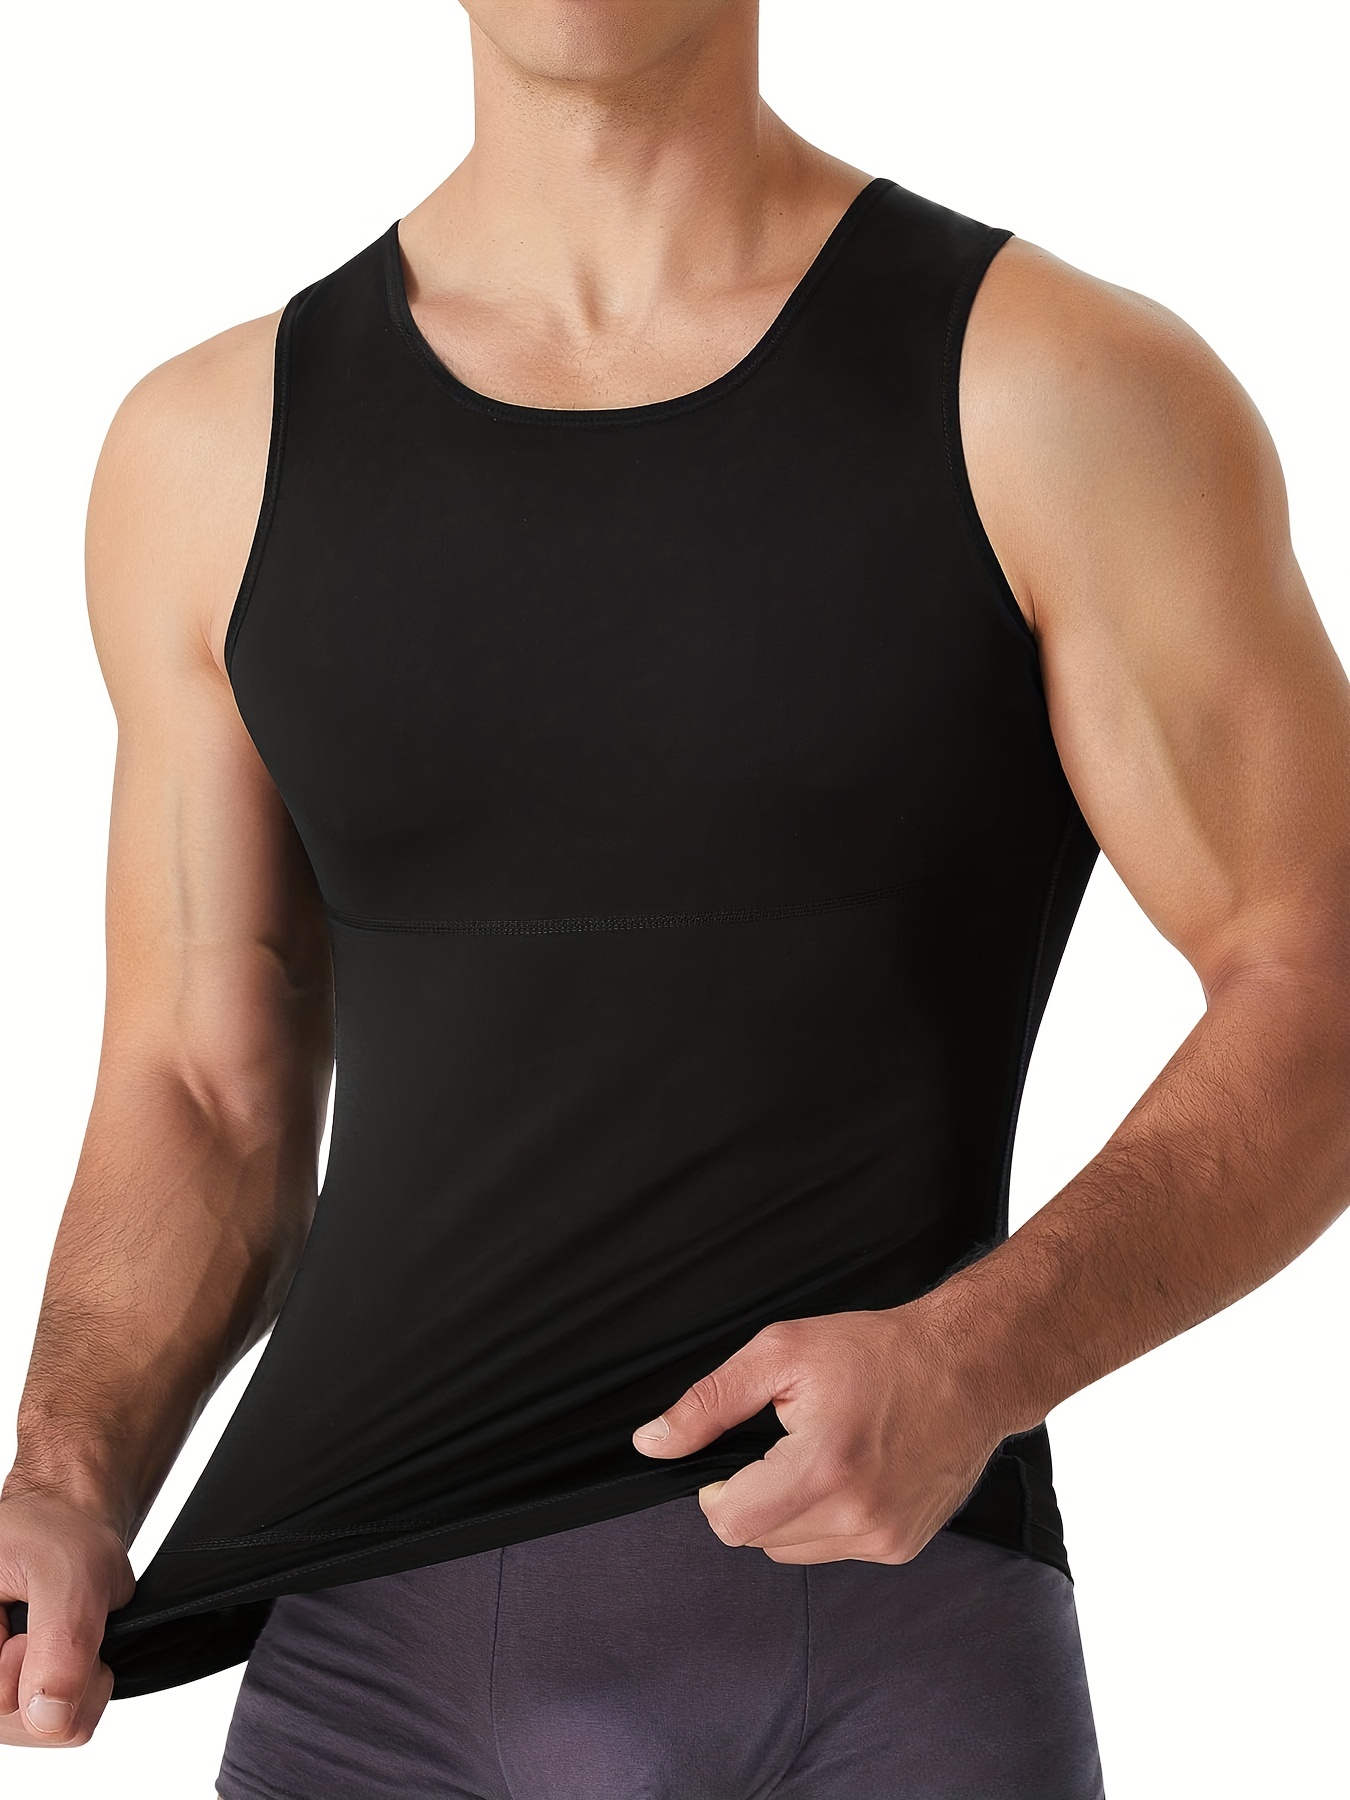 Camisetas sin Mangas Moldeadoras Transpirables para Hombres